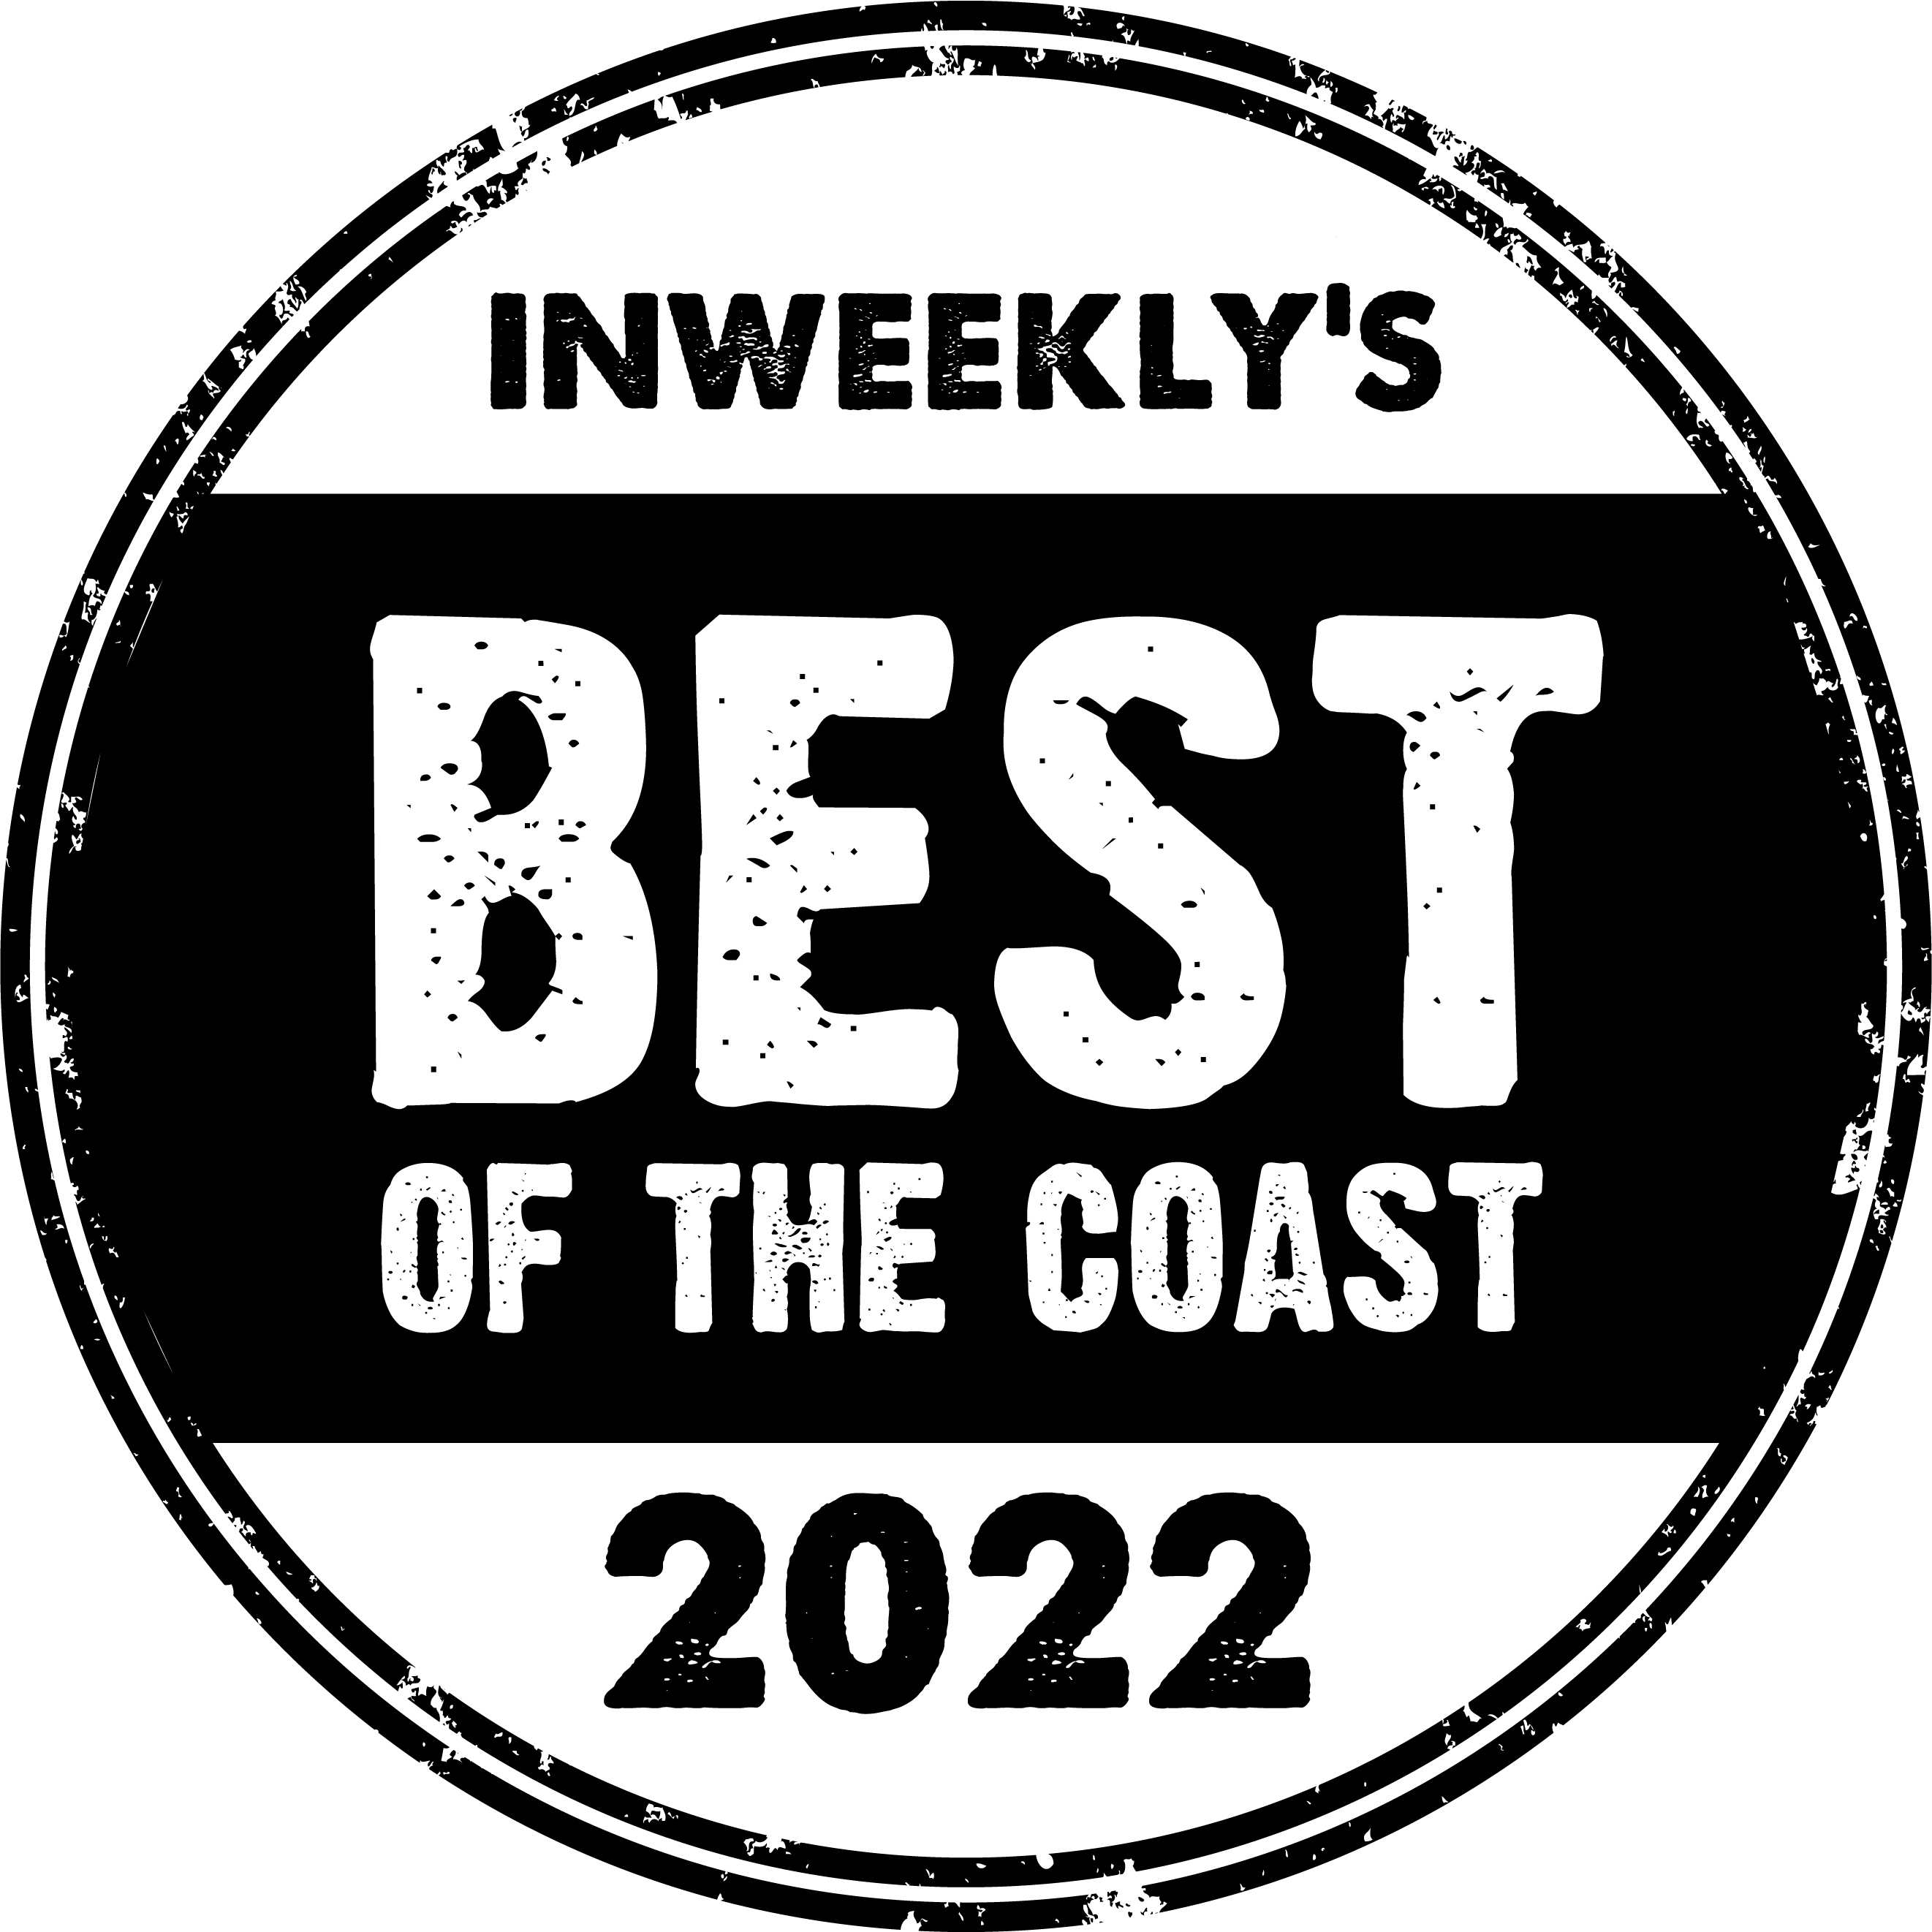 Voted Best Breakfast in Pensacola 2022 - Inweekly